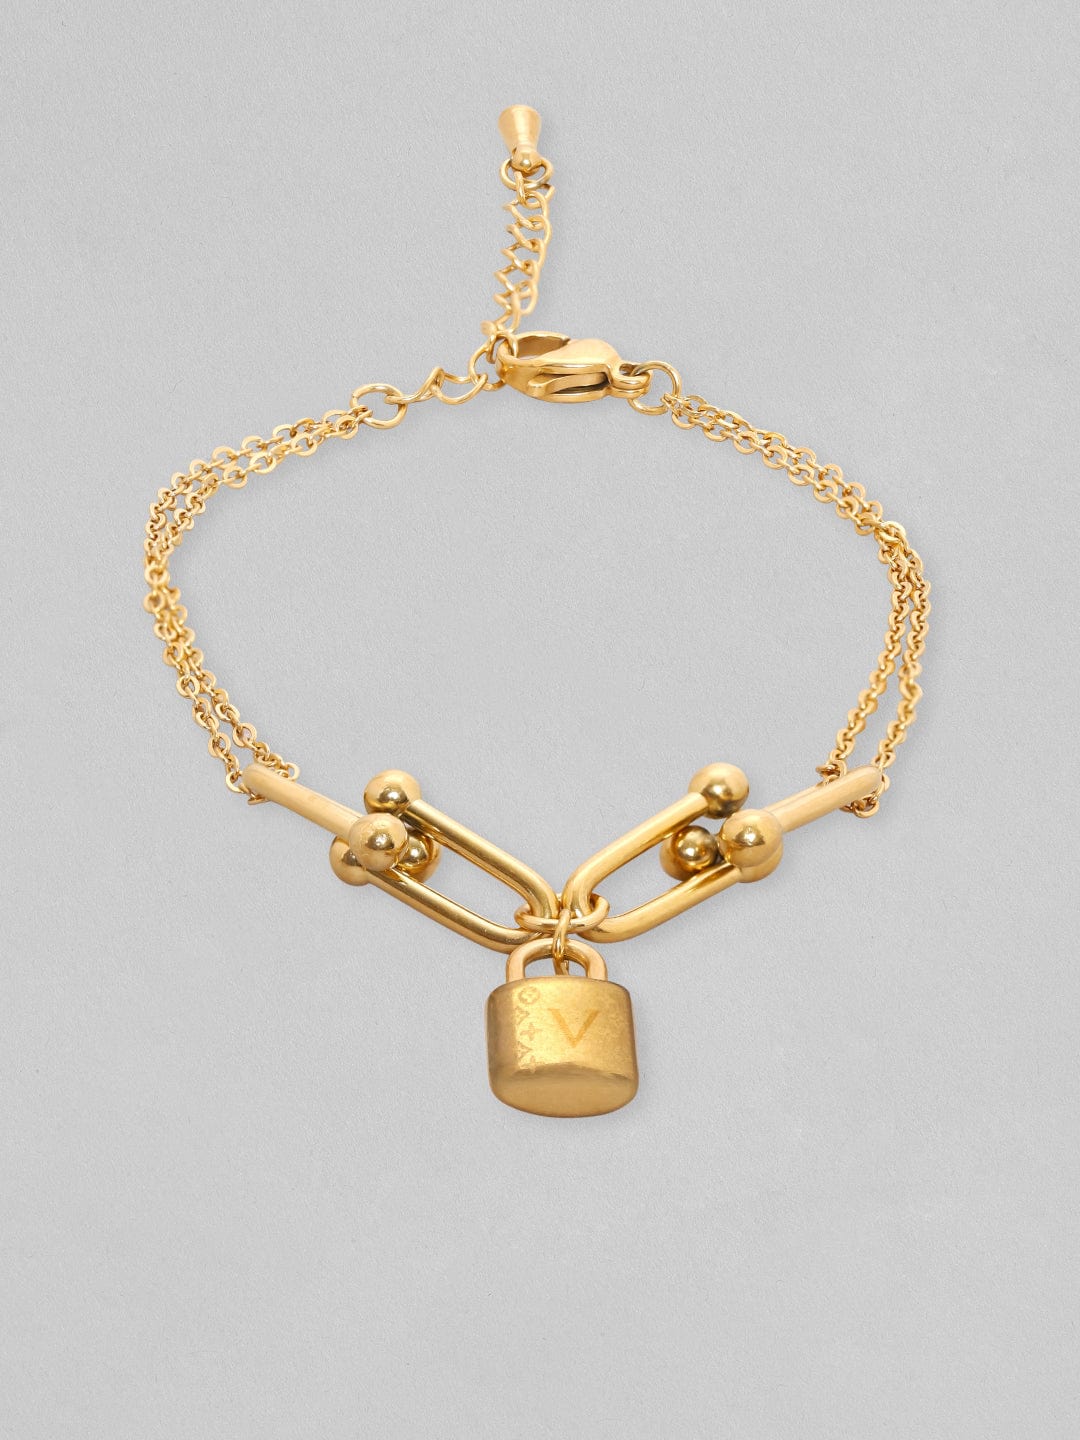 Rubans Voguish 18K Gold Plated Link With Charm Minimal Bracelet Bangles & Bracelets